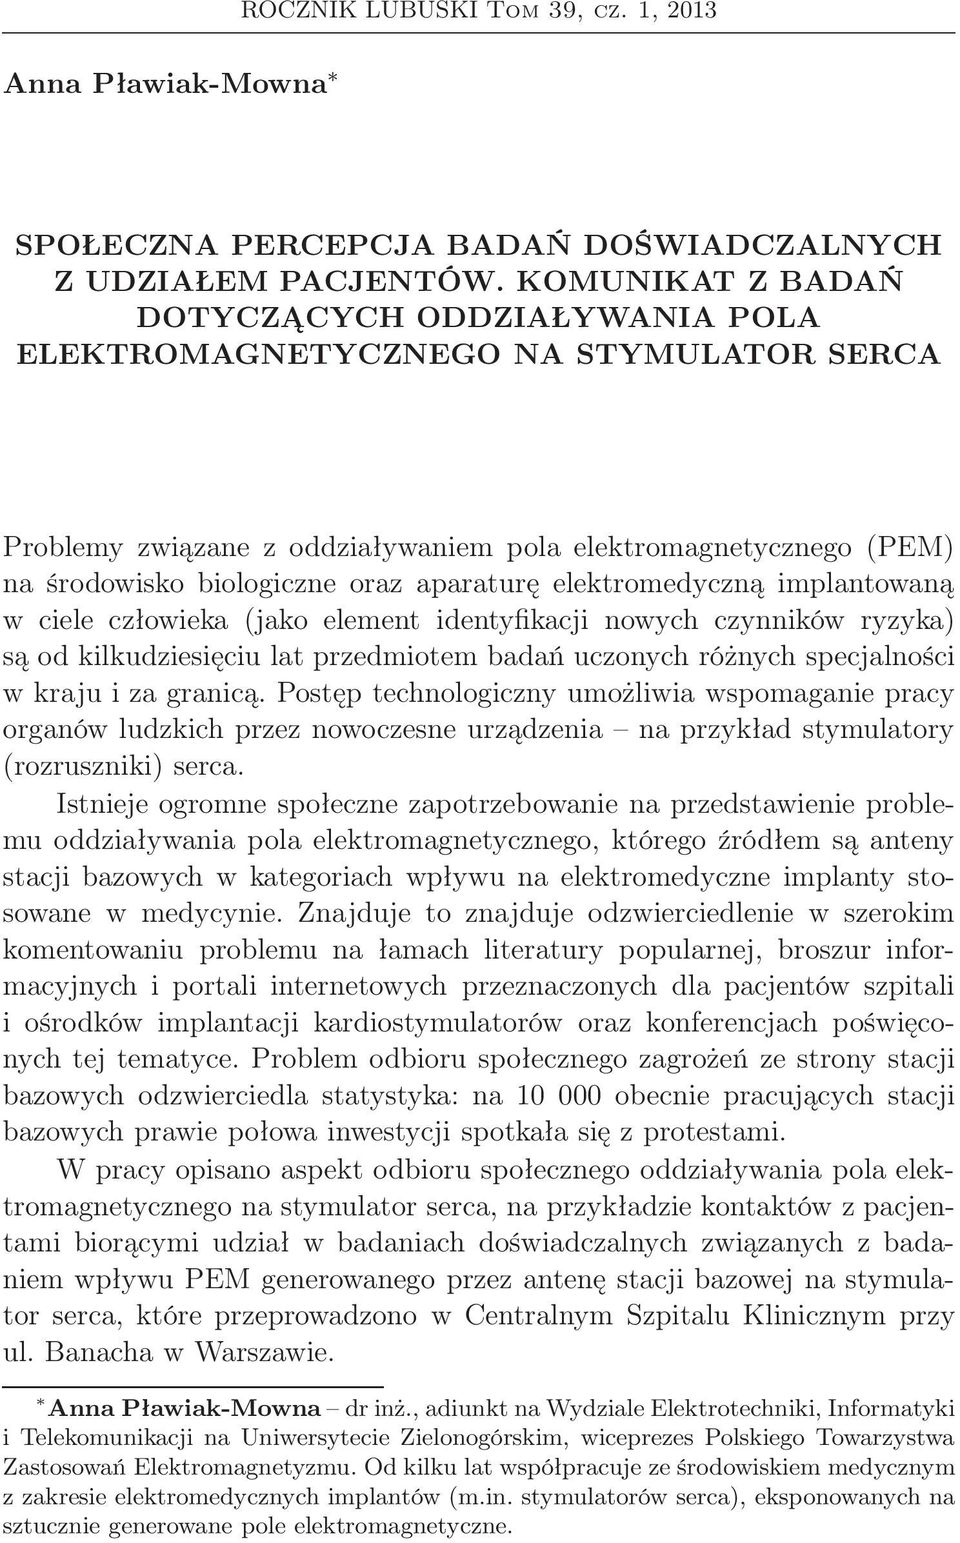 Anna Pławiak-Mowna. ROCZNIK LUBUSKI Tom 39, cz. 1, PDF Darmowe pobieranie